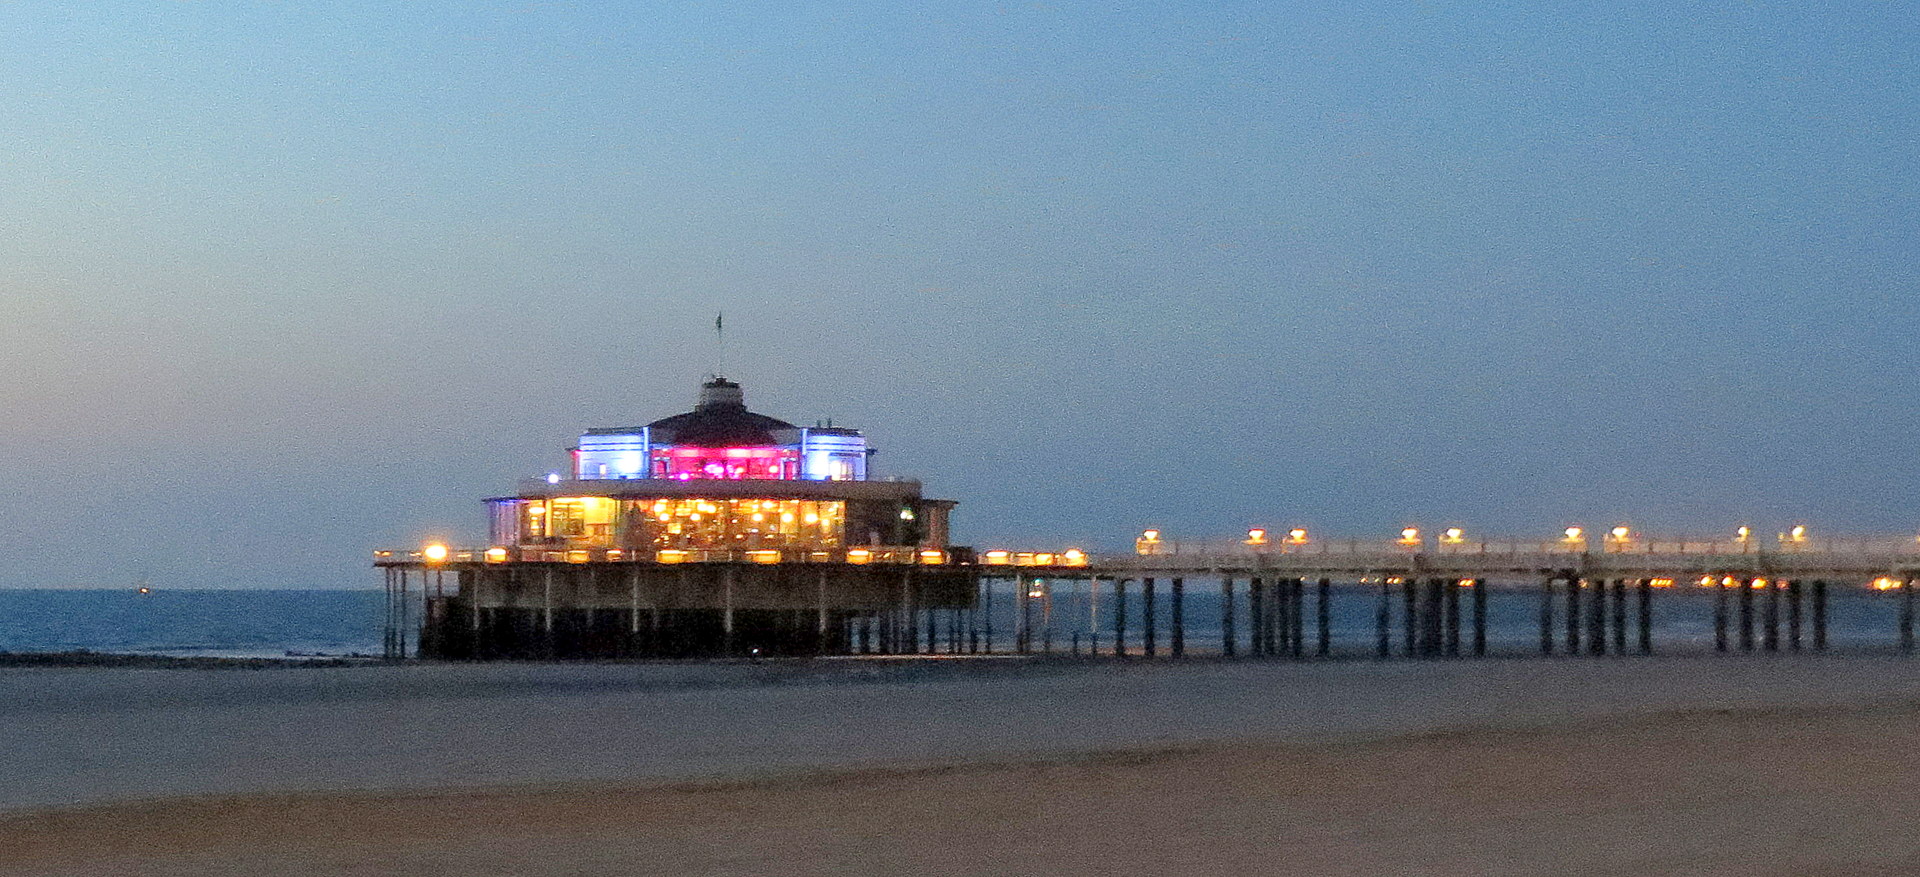 Der Pier by night